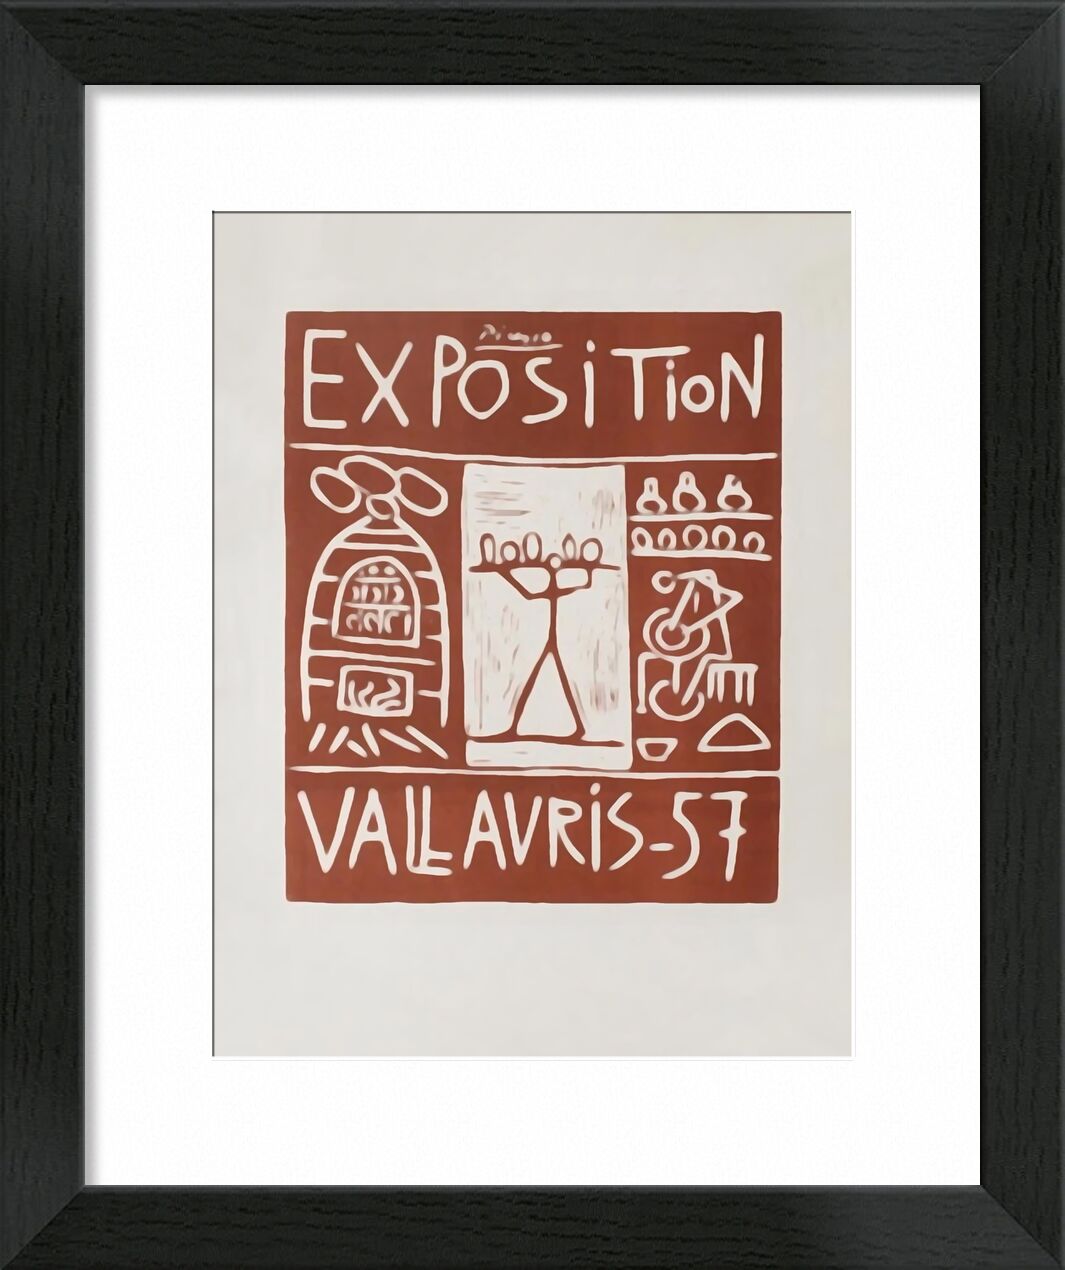 Poster 1957 - Exhibition Vallauris - Picasso von Bildende Kunst, Prodi Art, Ausstellungsplakat, Picasso